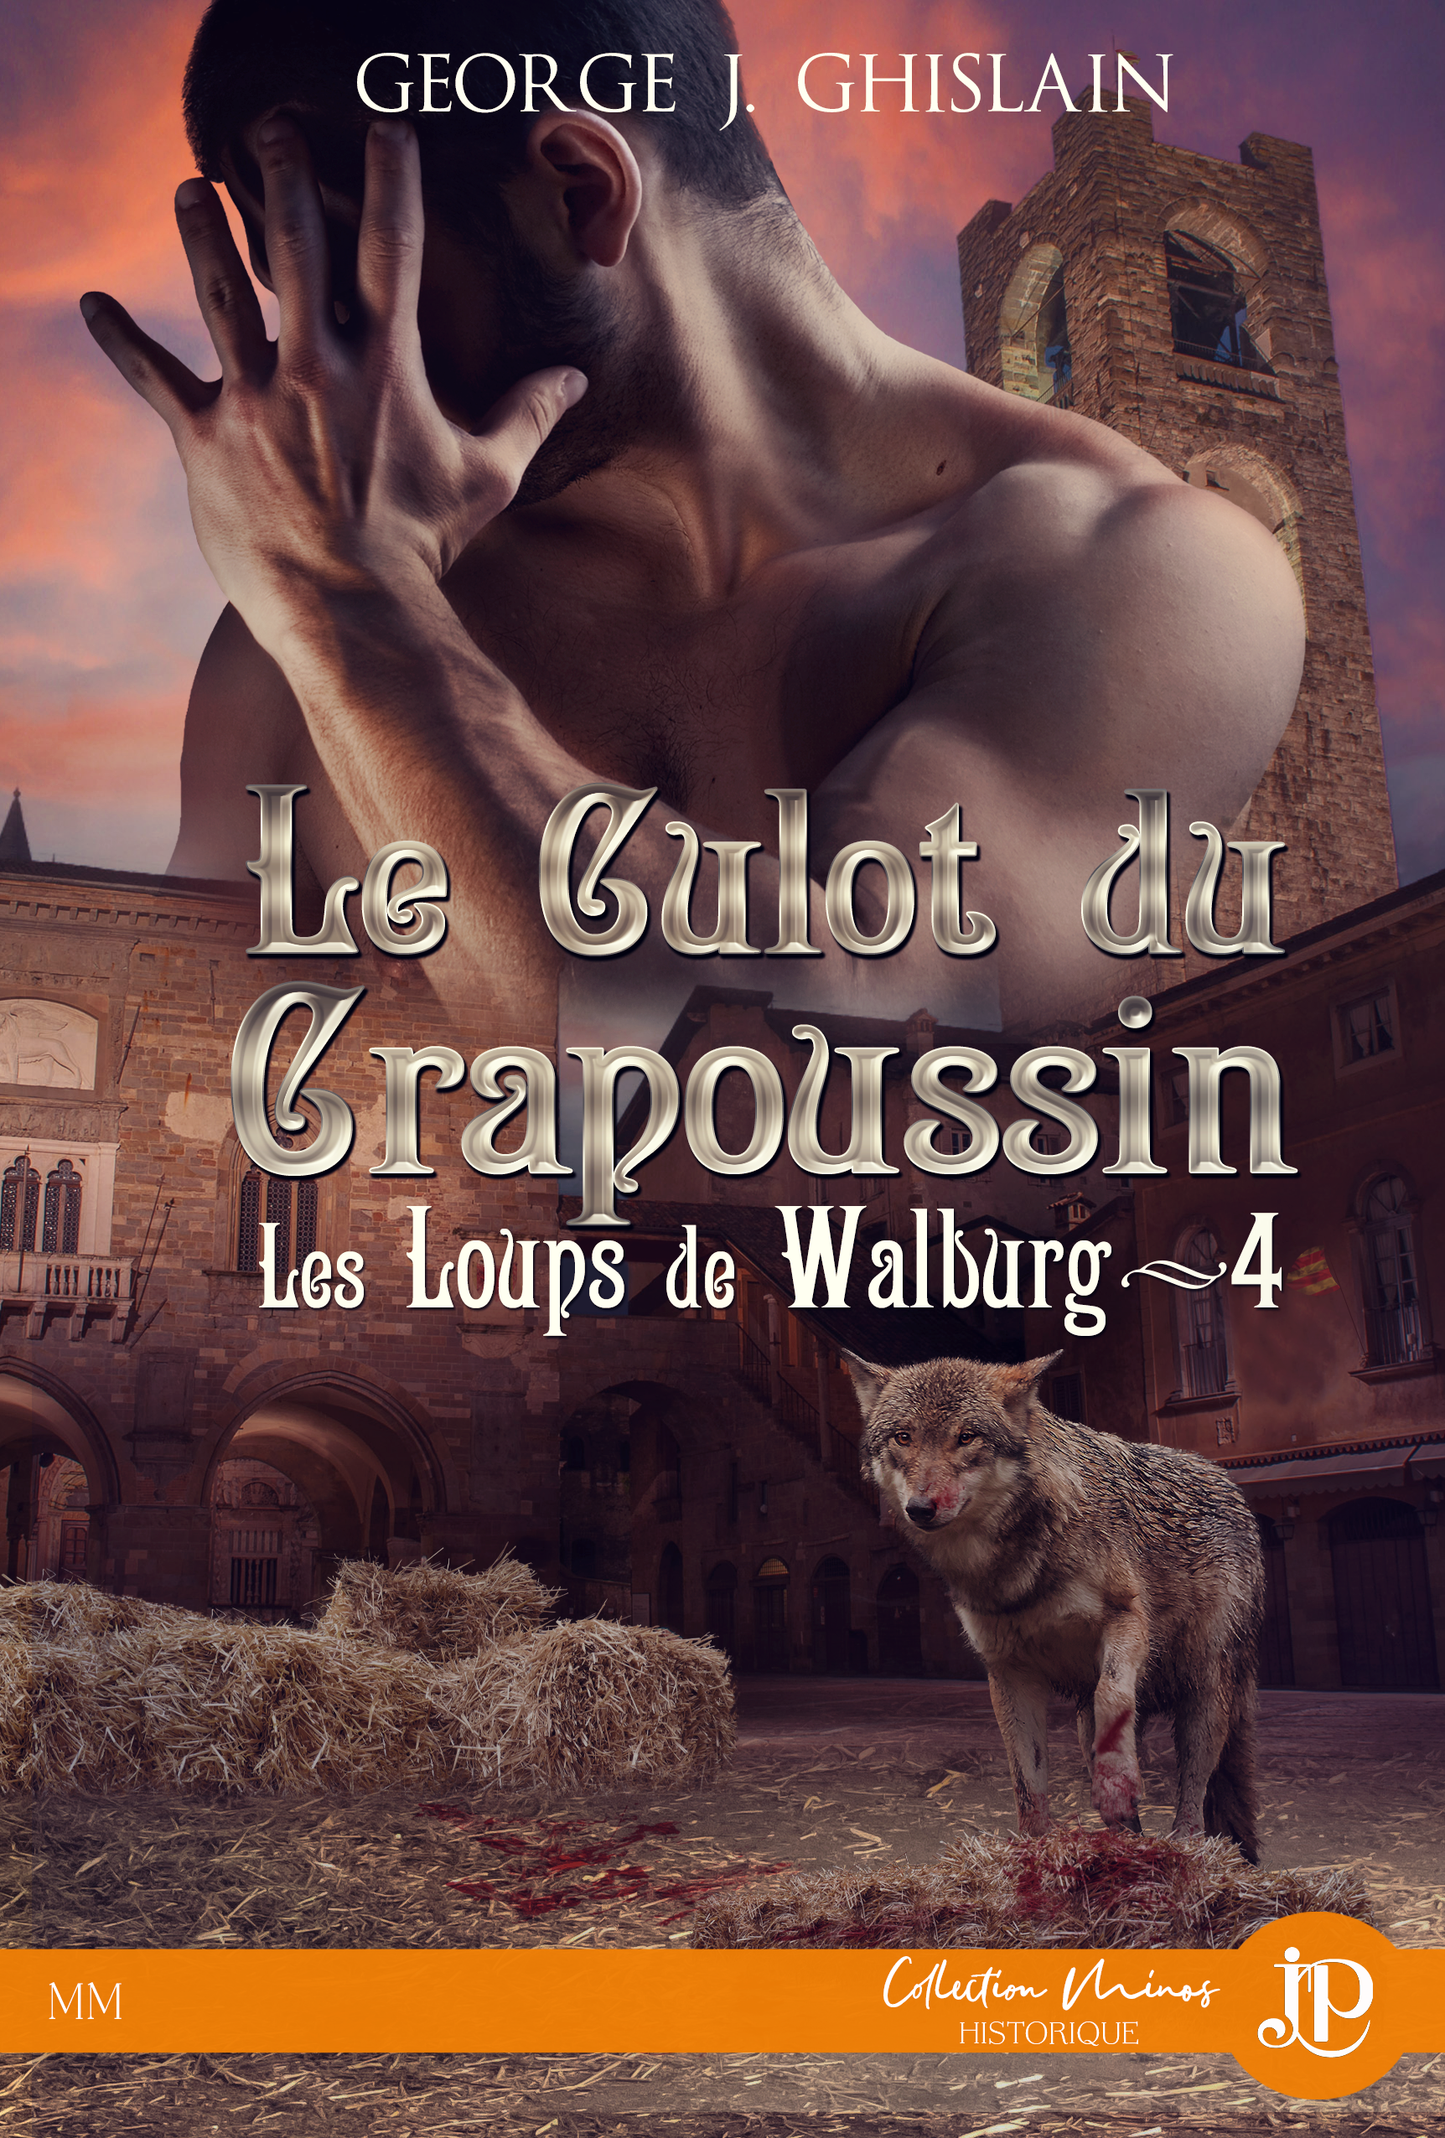 Les loups de Walburg #4 : Le culot du Crapoussin